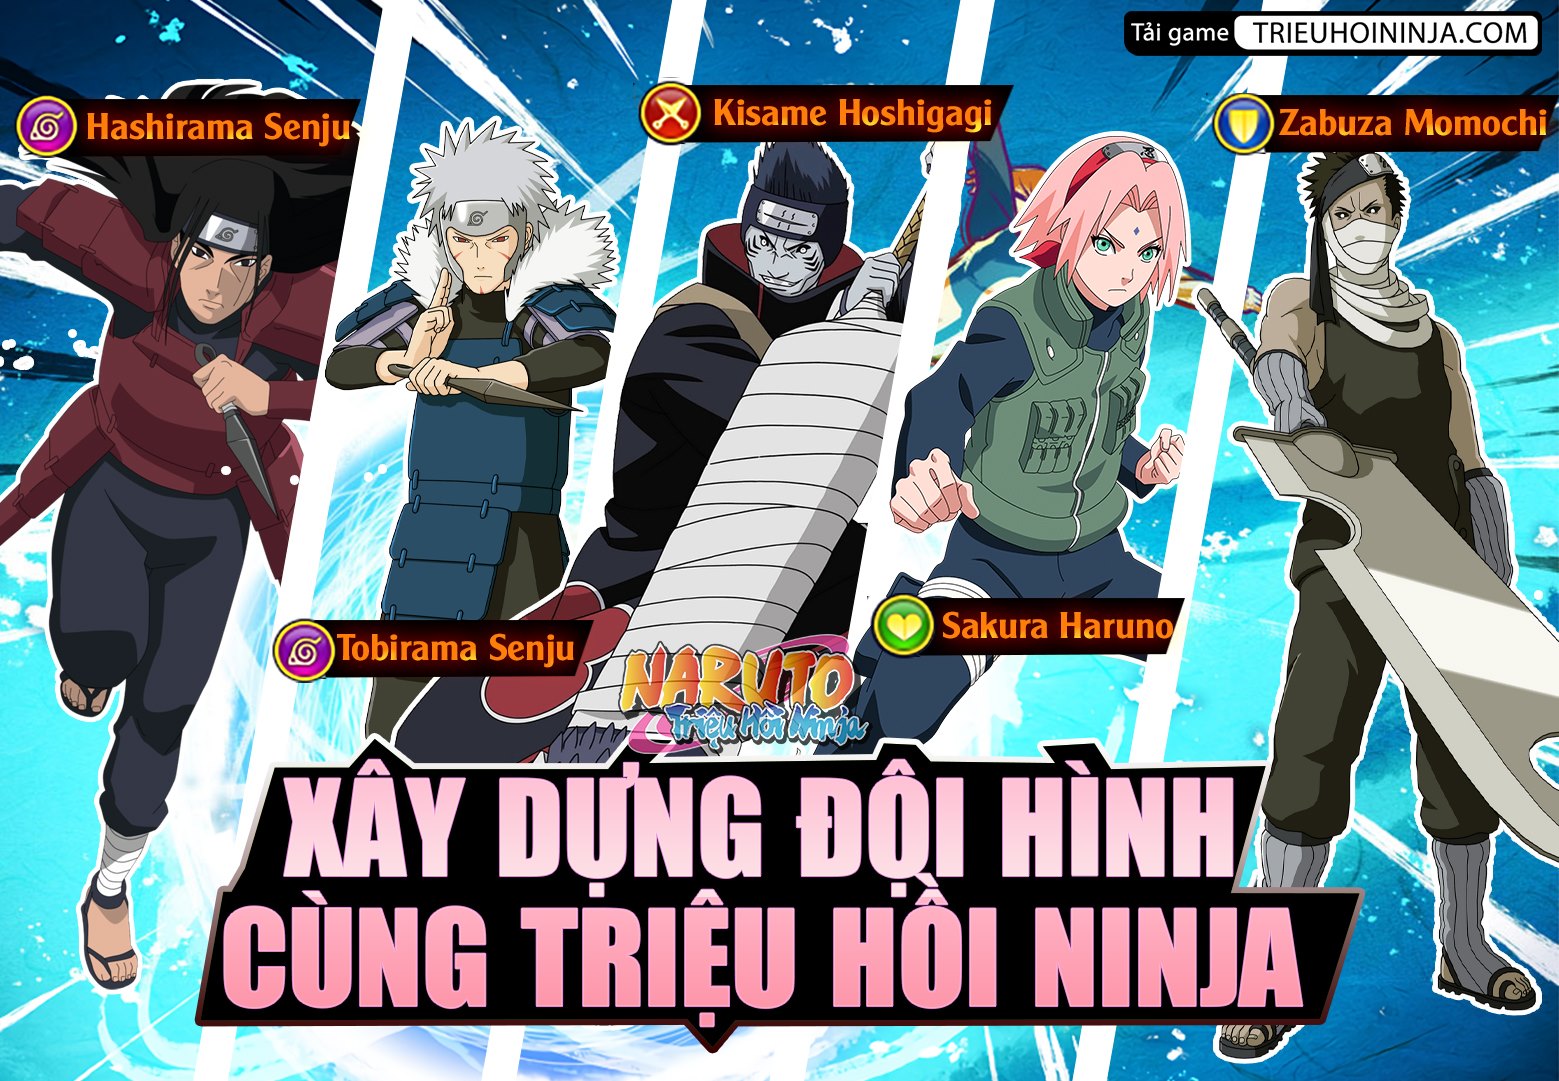 Trieu hoi ninja 2